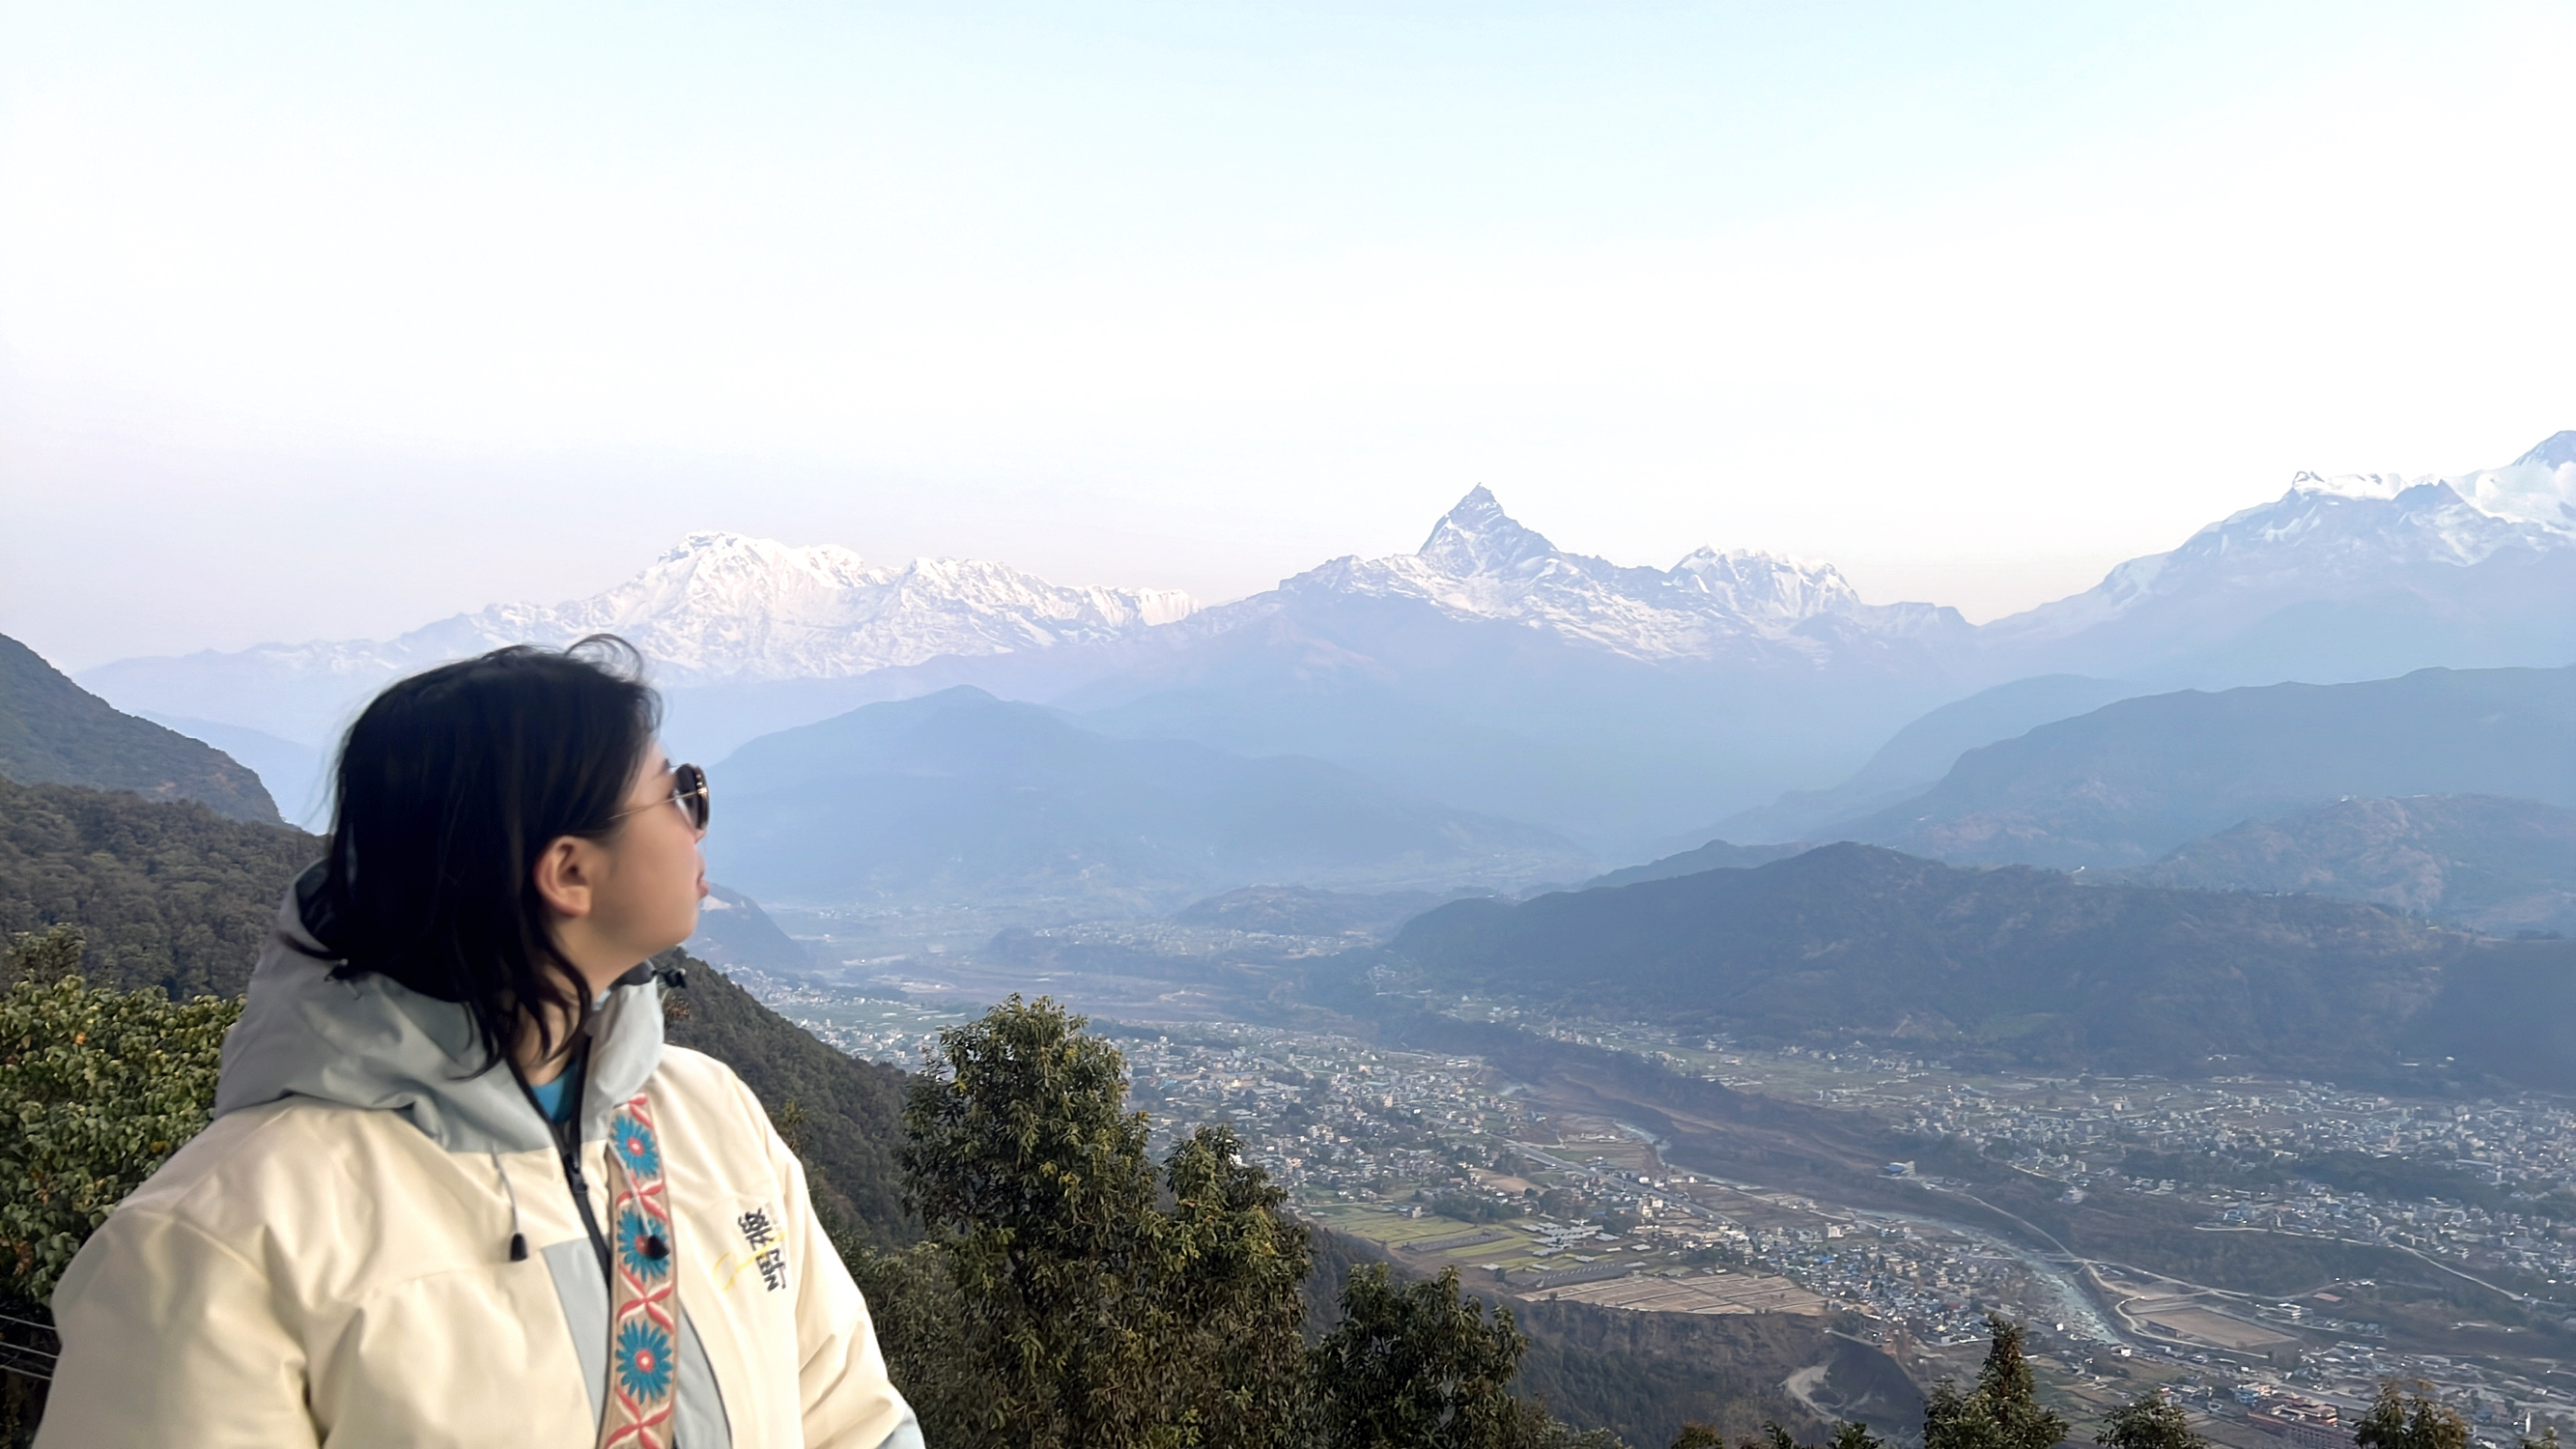 尼泊尔跟团游Day 3 | 喜马拉雅雪山的盛宴🏔️